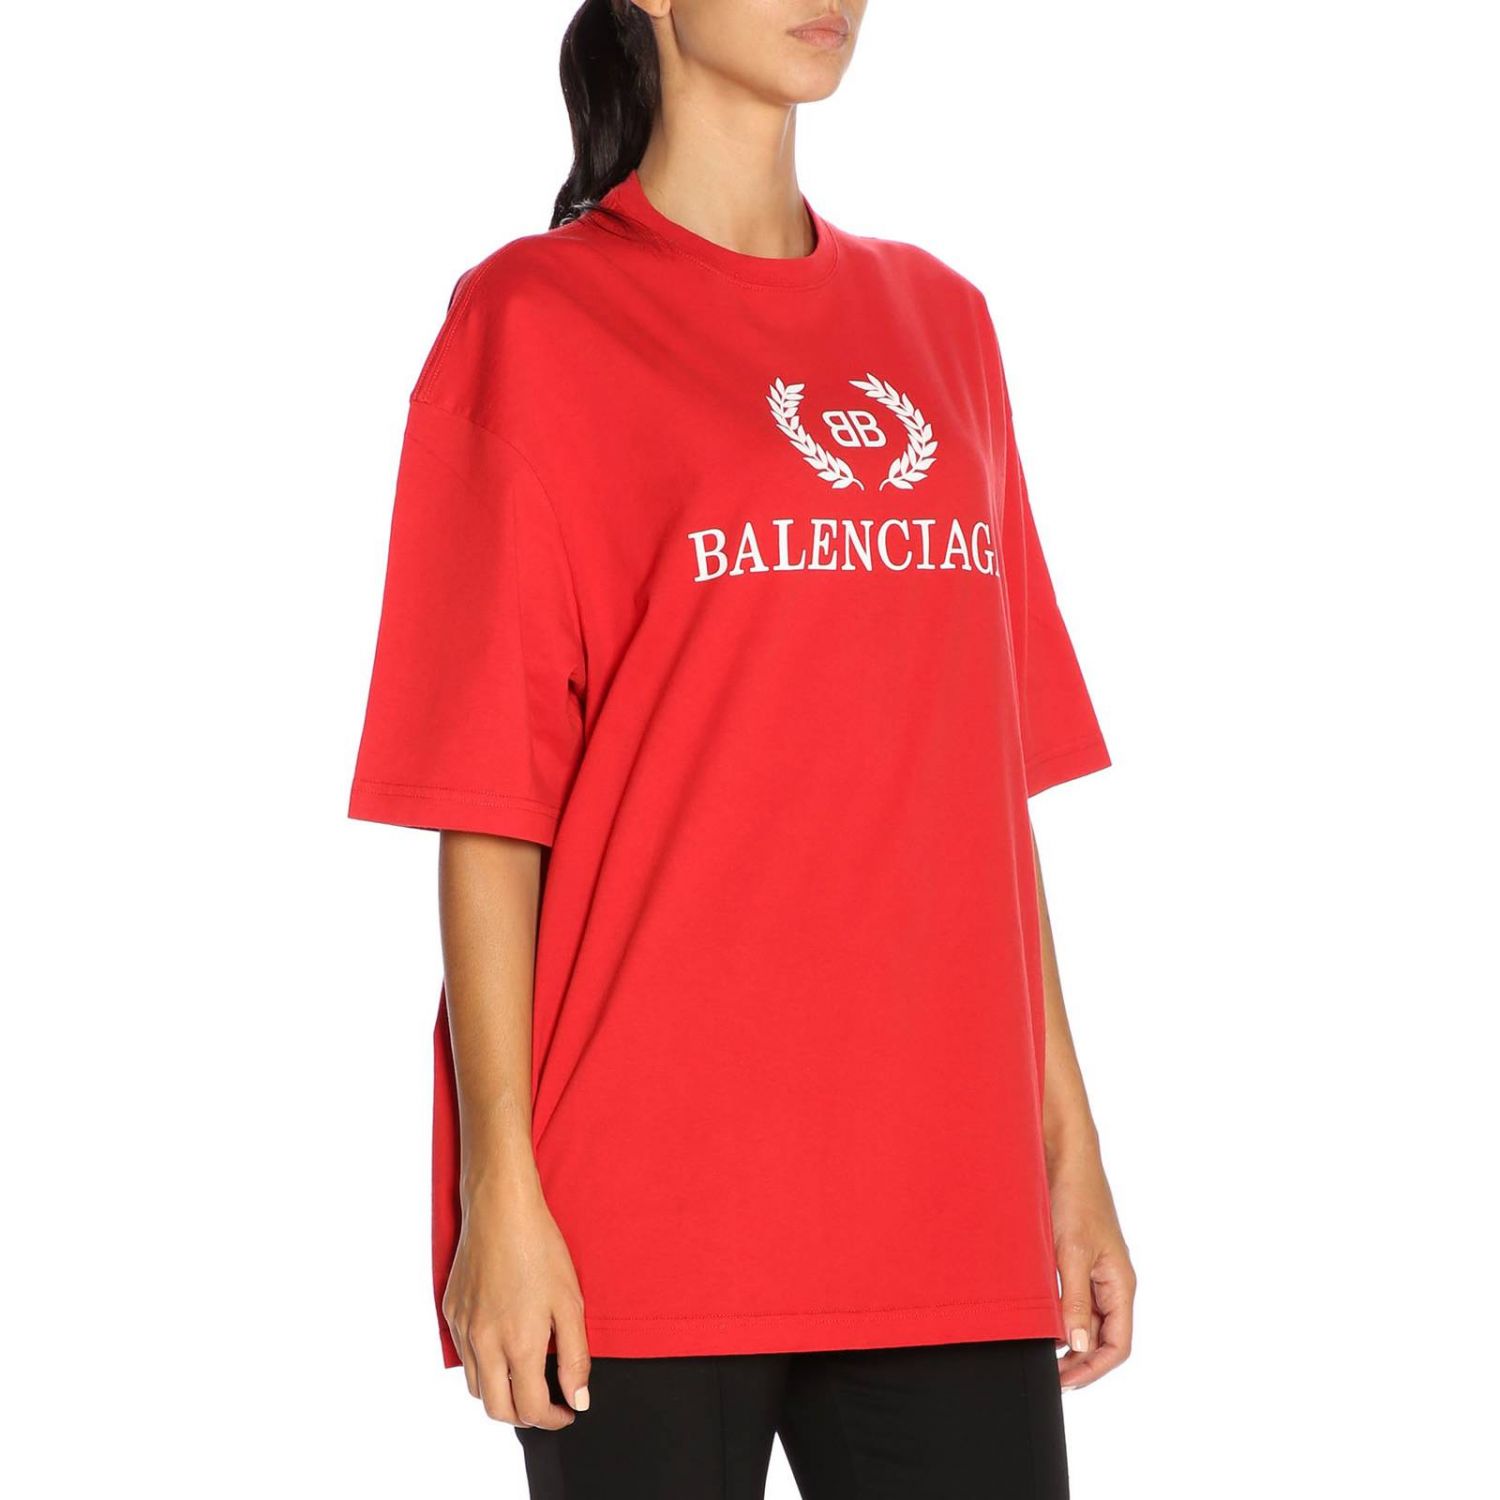 BALENCIAGA tshirt for women  Lilac  Balenciaga tshirt 641655 TKVJ1  online on GIGLIOCOM